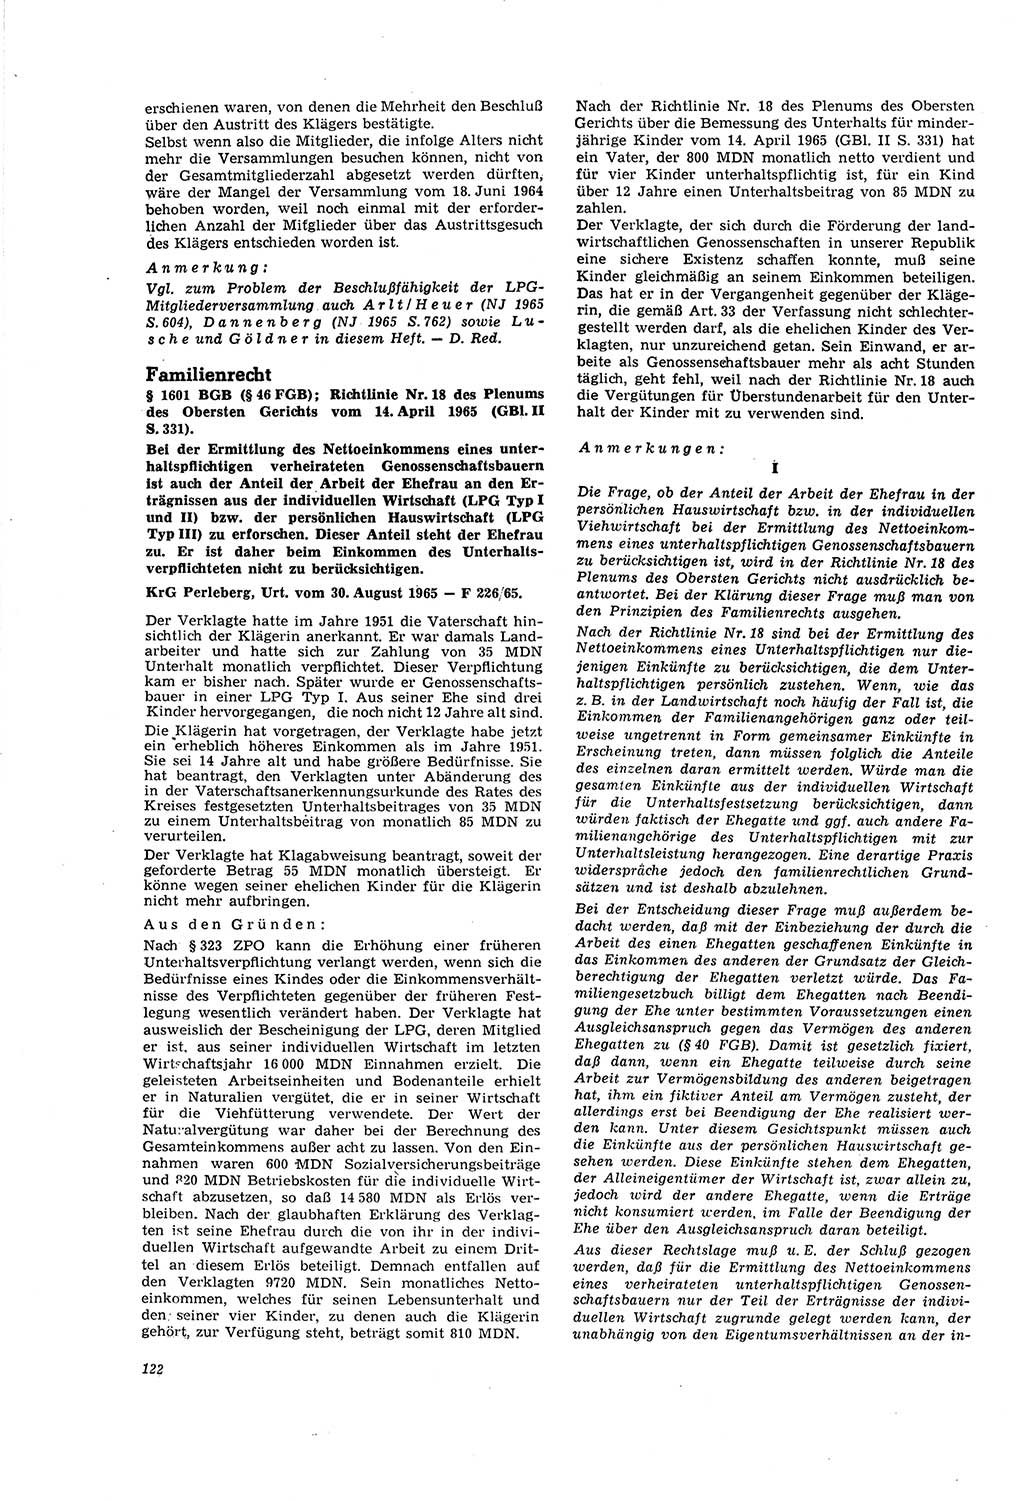 Neue Justiz (NJ), Zeitschrift für Recht und Rechtswissenschaft [Deutsche Demokratische Republik (DDR)], 20. Jahrgang 1966, Seite 122 (NJ DDR 1966, S. 122)